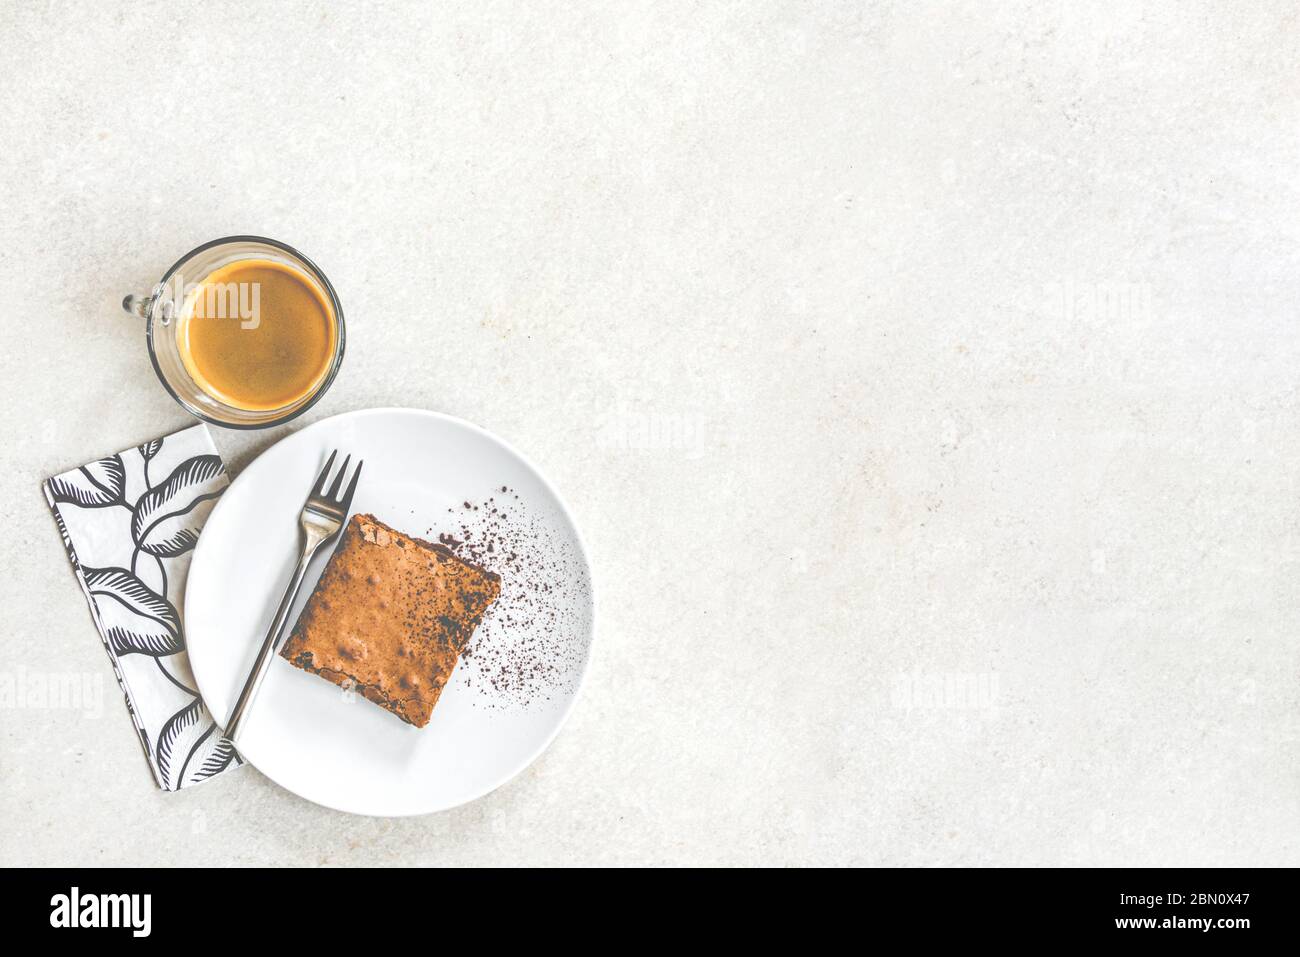 Vue de dessus d'une tasse de café et d'une assiette de dessert avec gâteau au brownie sur fond rustique blanc. Banque D'Images